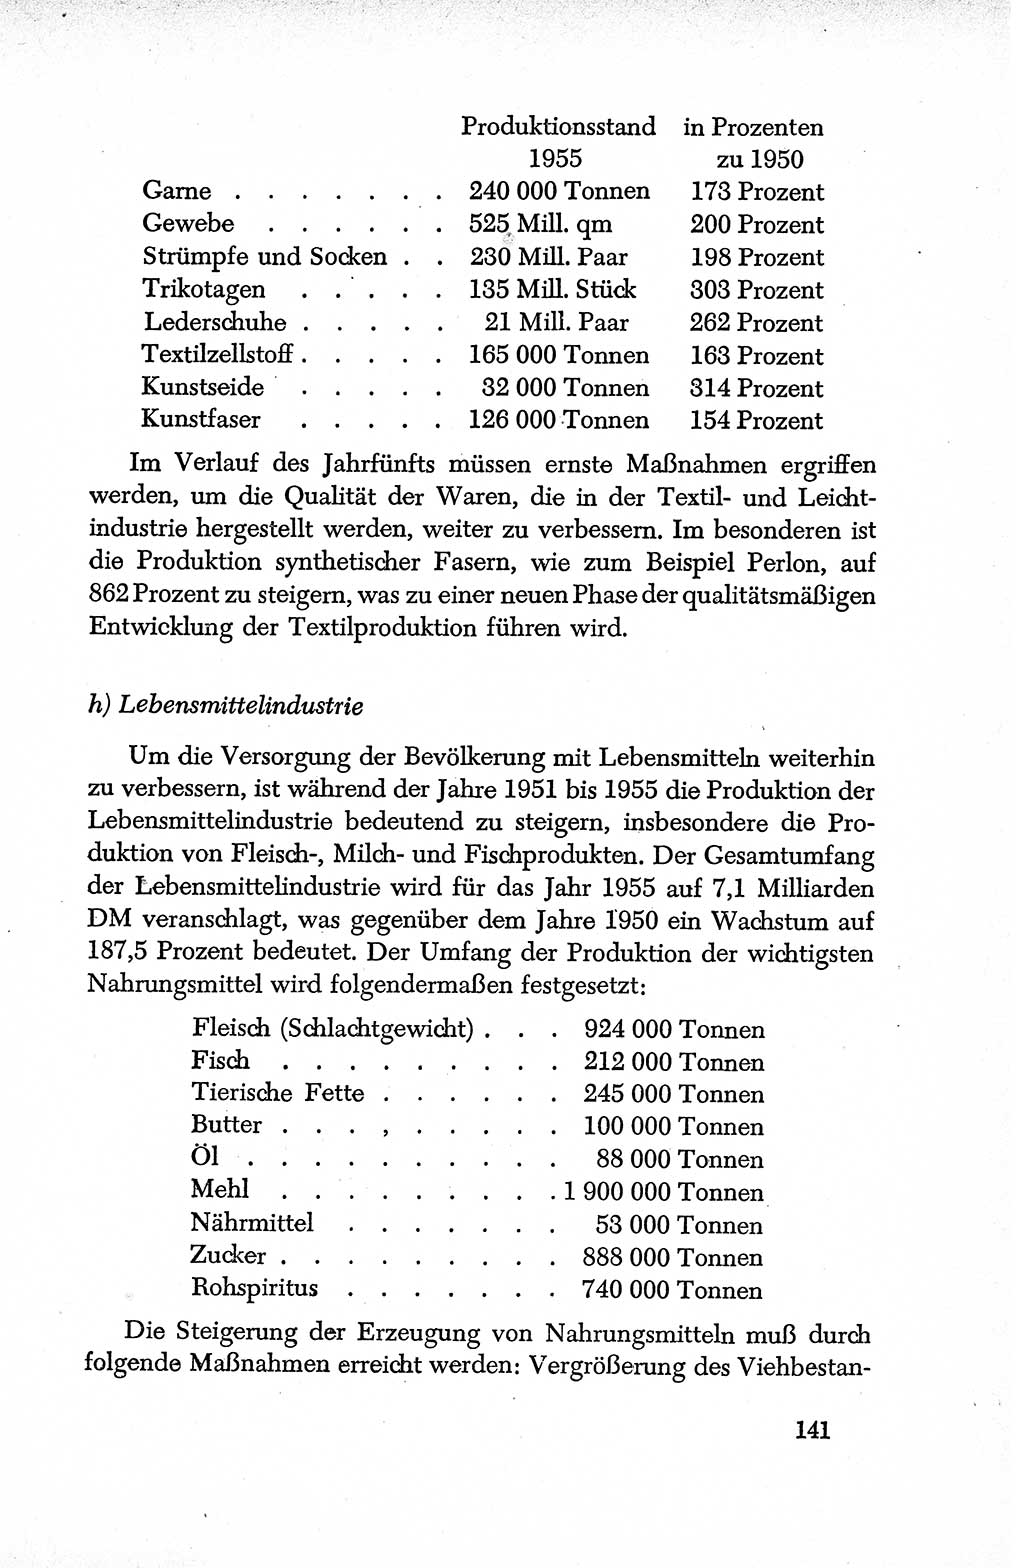 Dokumente der Sozialistischen Einheitspartei Deutschlands (SED) [Deutsche Demokratische Republik (DDR)] 1950-1952, Seite 141 (Dok. SED DDR 1950-1952, S. 141)